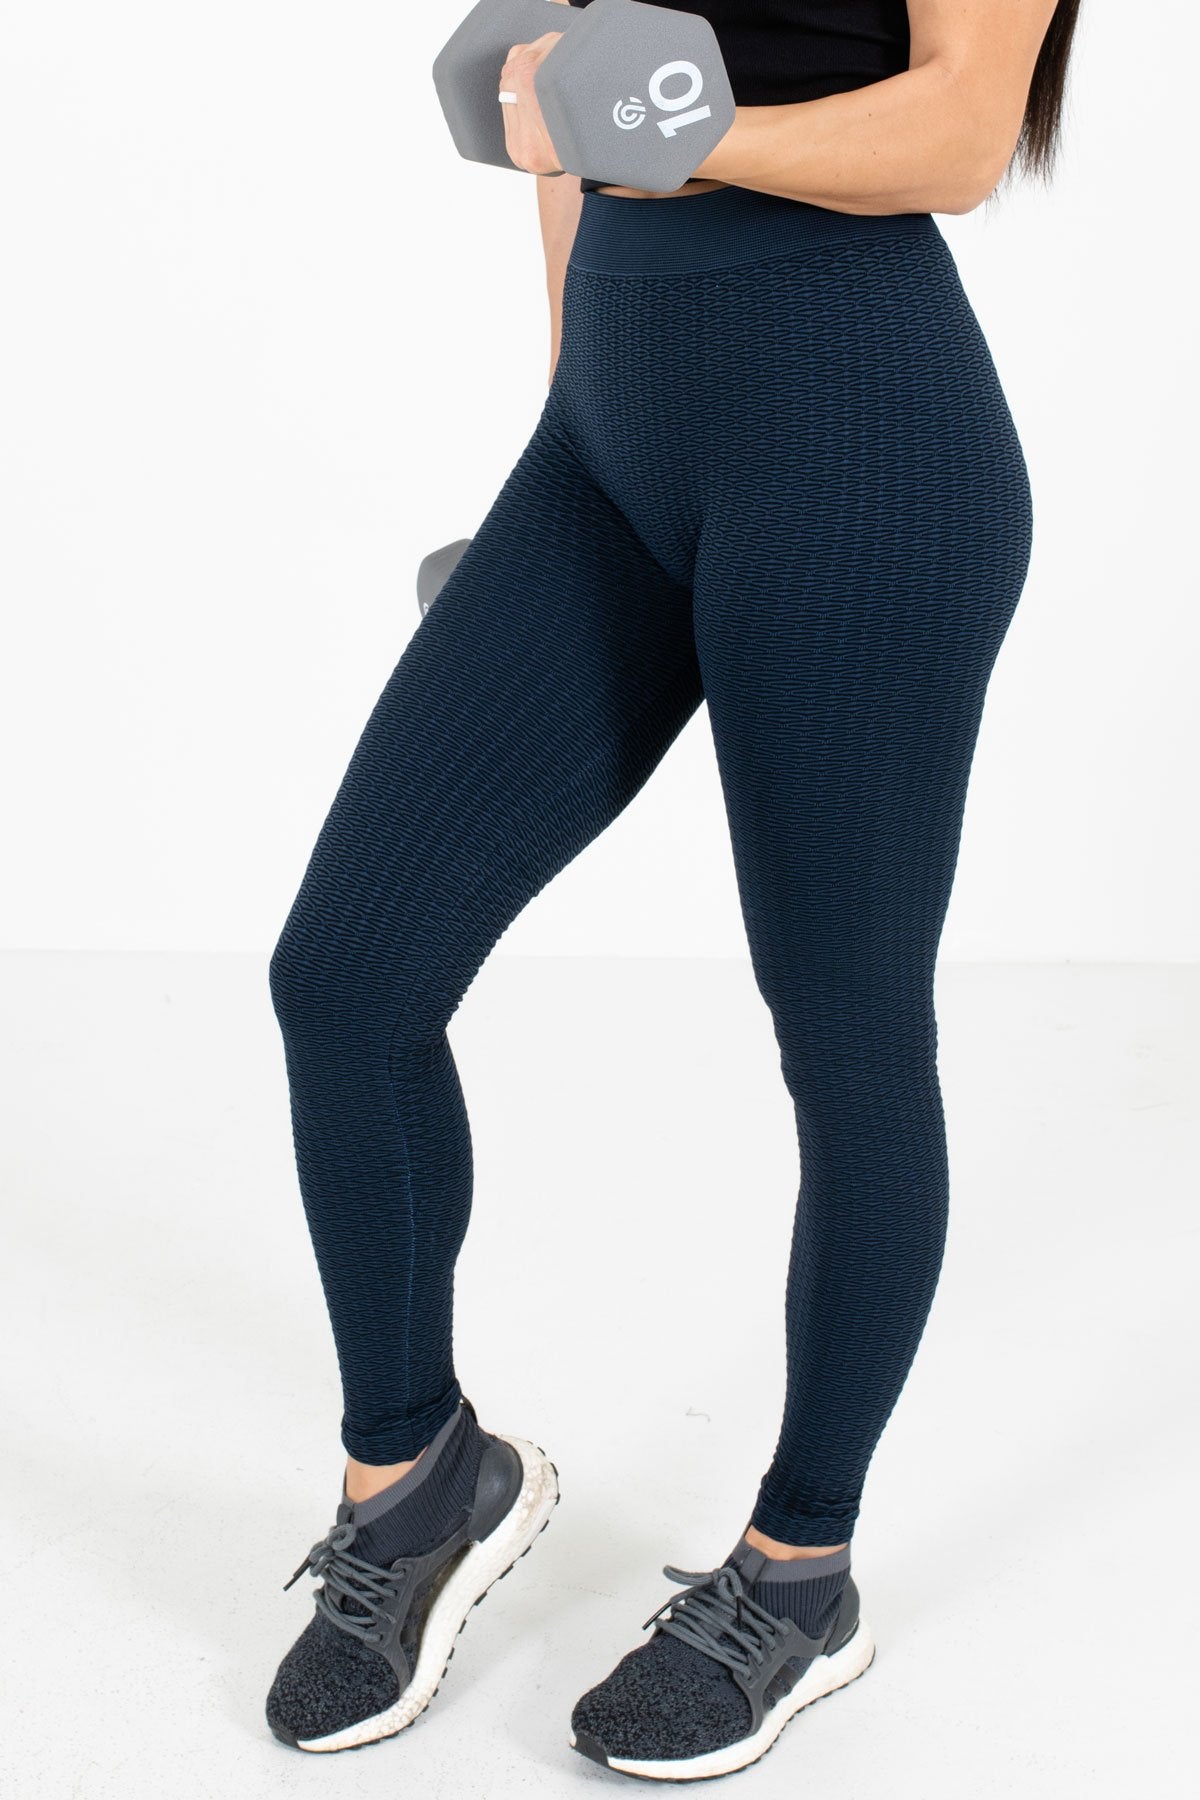 navy blue patterned leggings